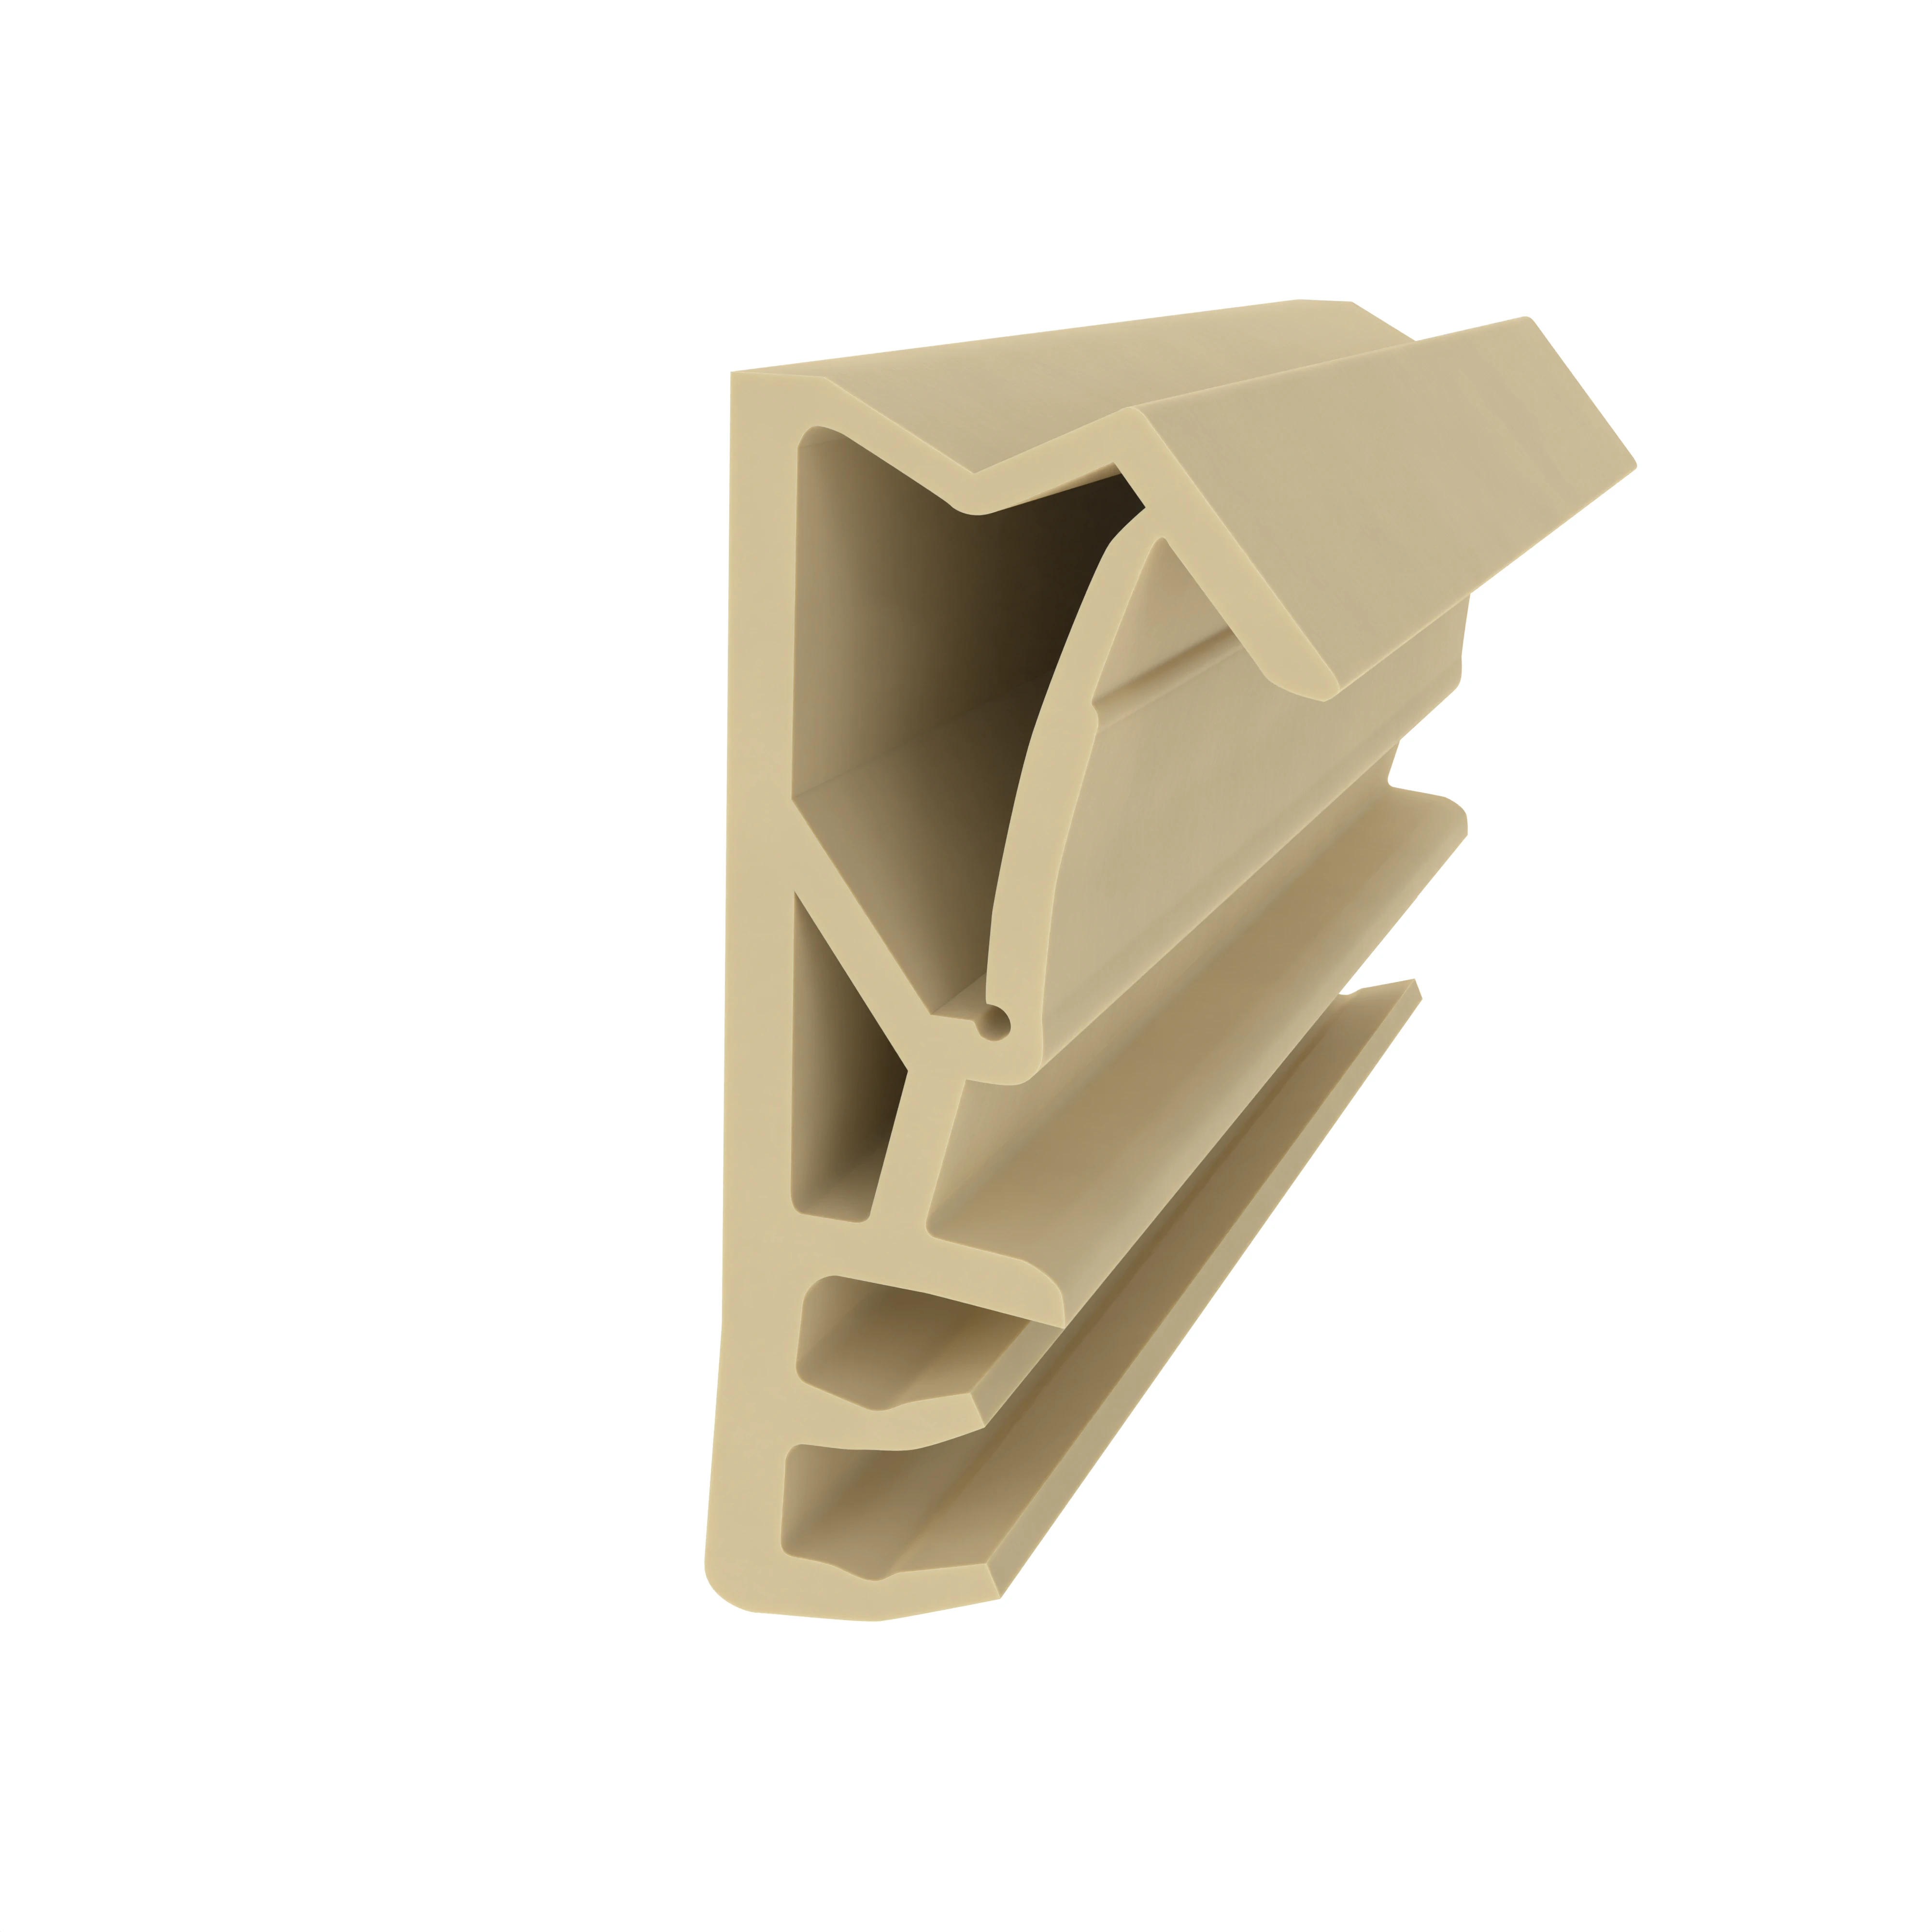 Flügelfalzdichtung für Holzelemente | 15 mm Falzhöhe | Farbe: beige